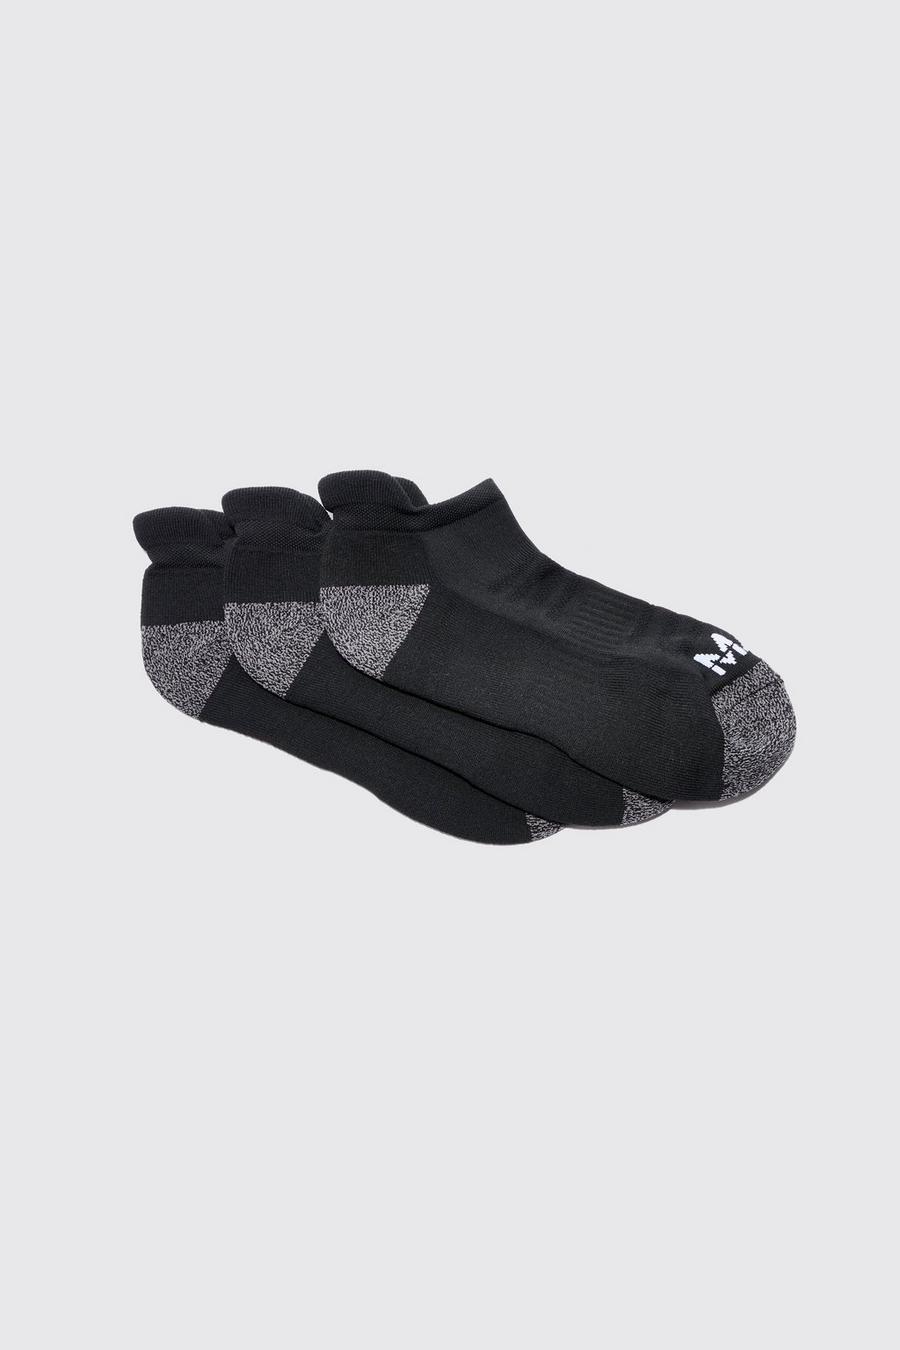 Pack de 3 pares de calcetines MAN Active acolchados, Black